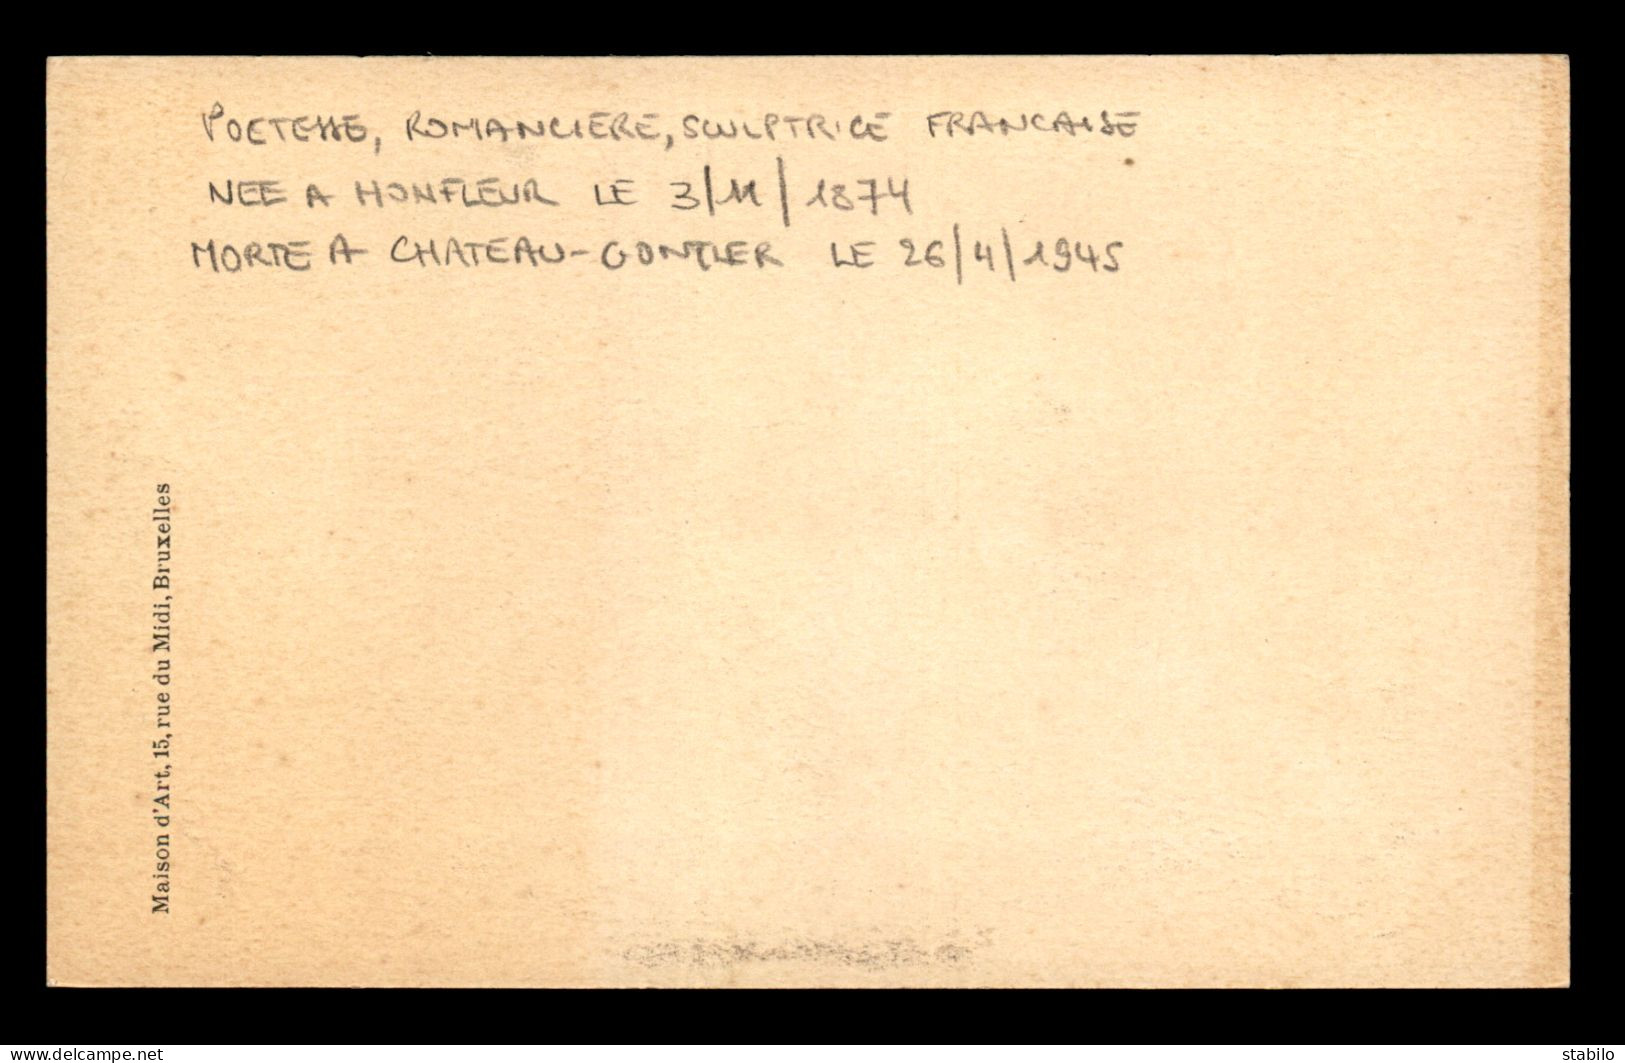 ECRIVAINS - LUCIE DELARNE MARDRUS (1874-1945) POETE,  ROMANCIERE ET SCULPTRICE FRANCAISE - Writers